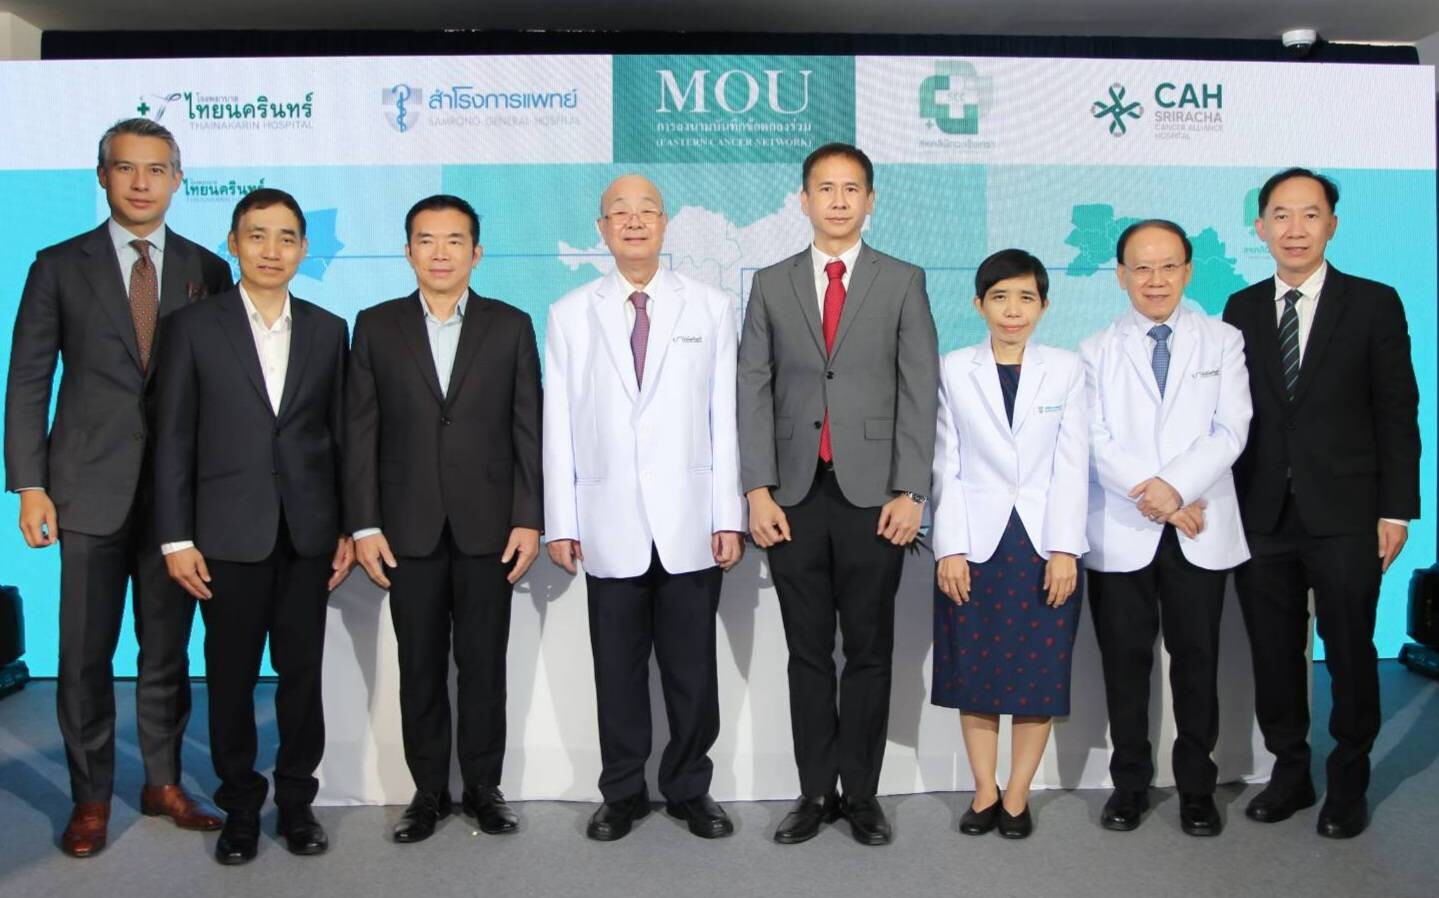 รพ.ไทยนครินทร์ เปิดอาคารรังสีรักษา อย่างเป็นทางการ พร้อมลงนามบันทึกข้อตกลง Eastern Cancer Network เครือข่ายการรักษาผู้ป่วยมะเร็งในภาคตะวันออกของประเทศไทย